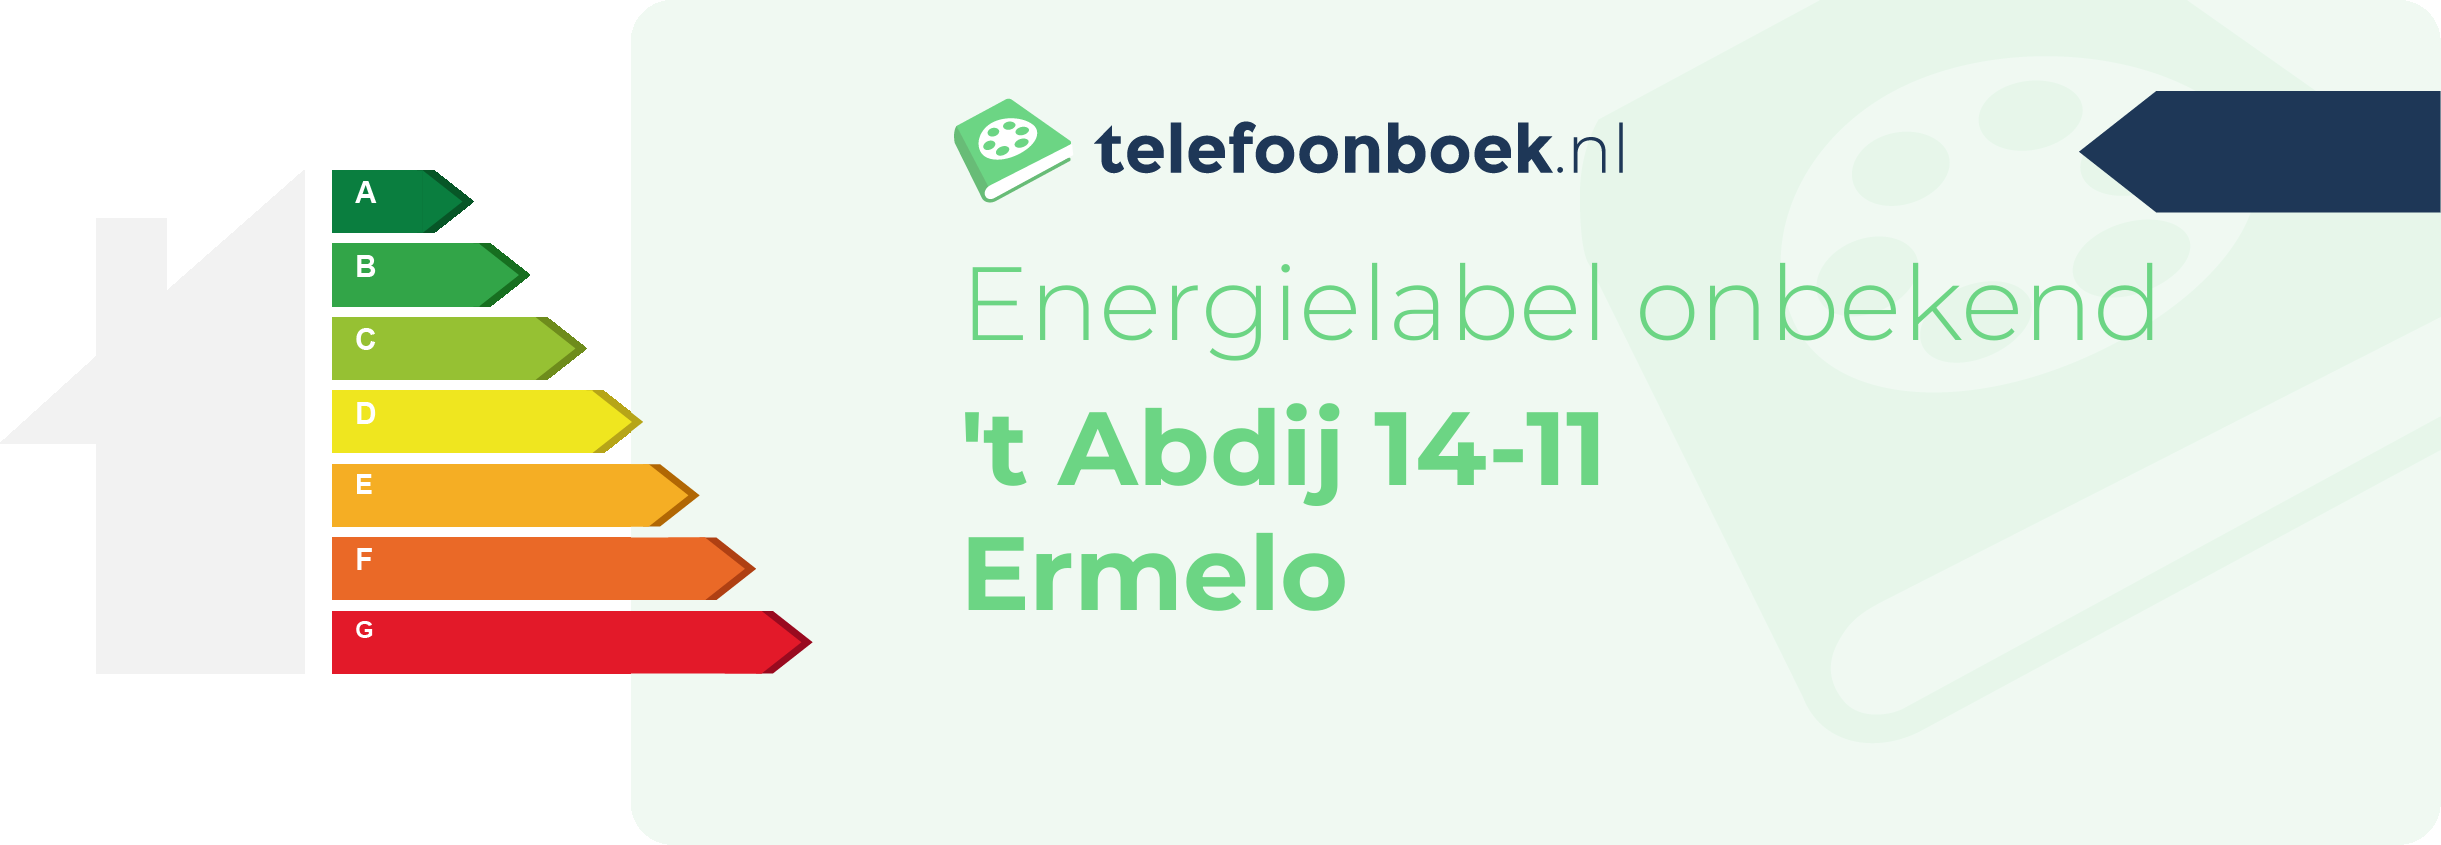 Energielabel 't Abdij 14-11 Ermelo